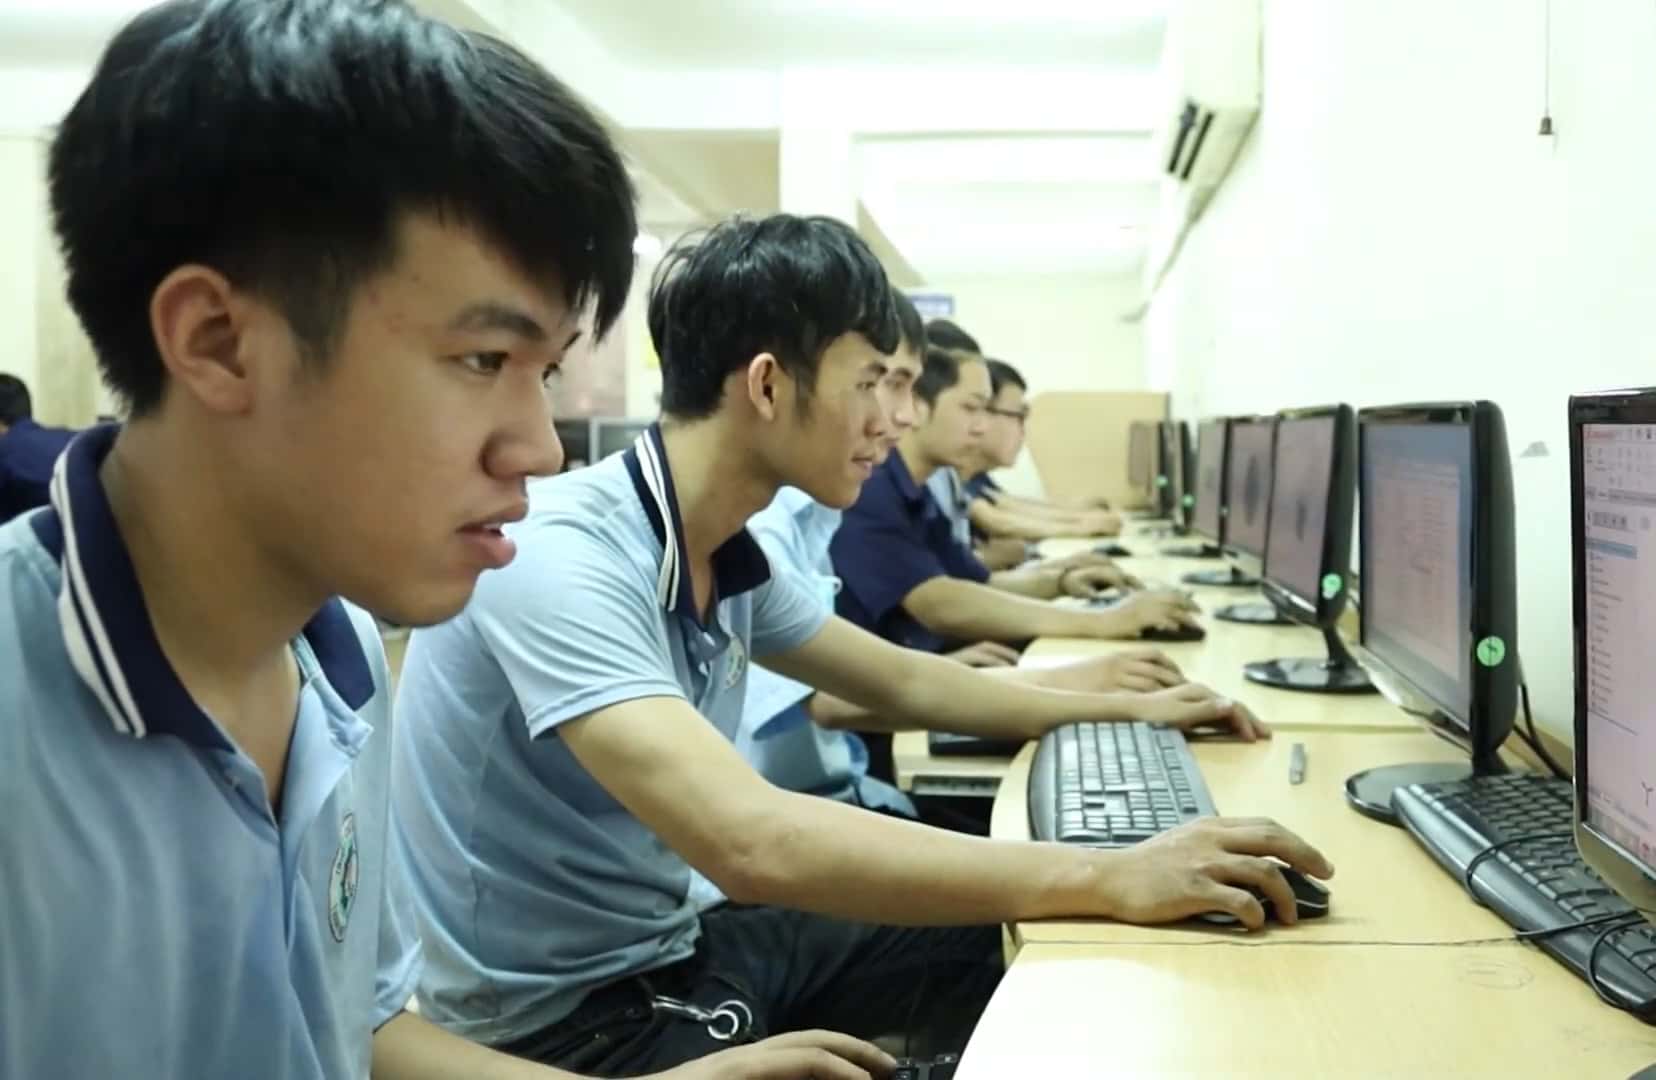 Tuyển Sinh Học Nghề ở Quận Bình Tân